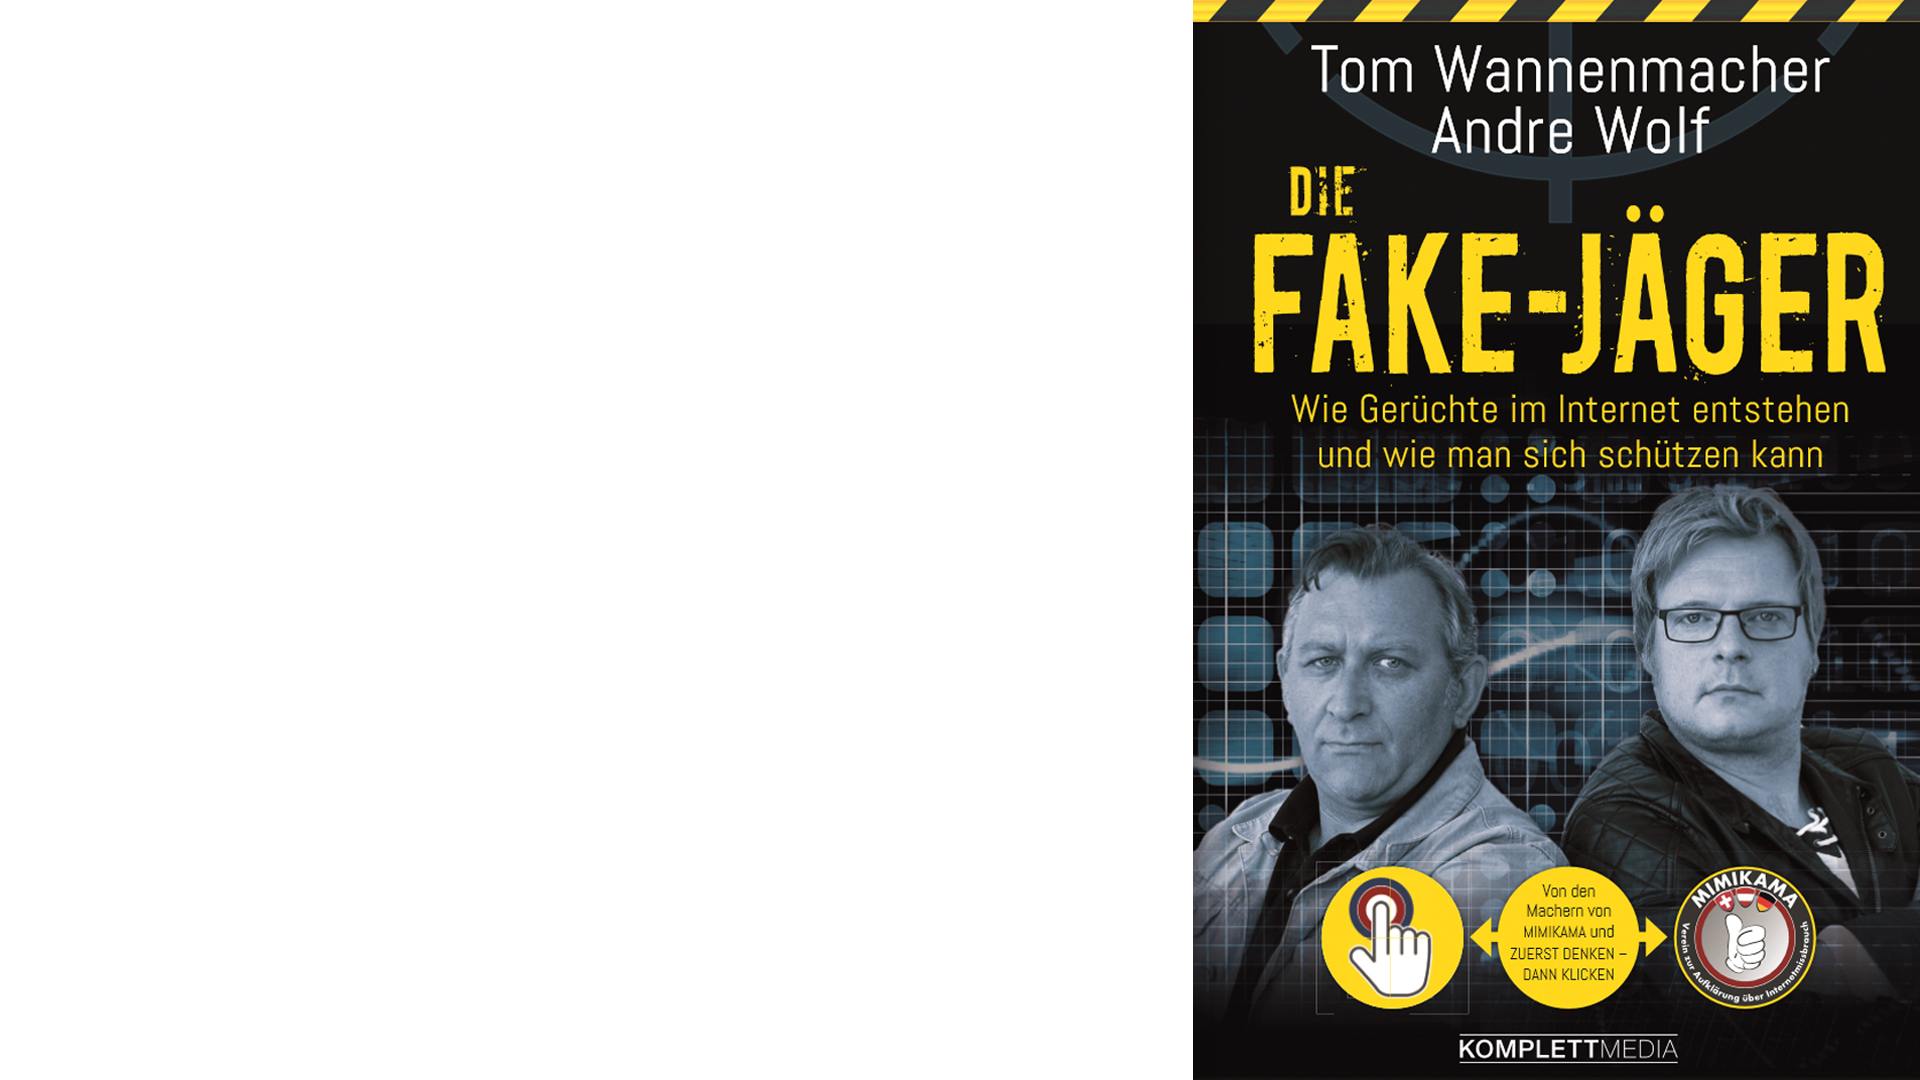 Tom Wannenmacher/Andre Wolf: „Die Fake-Jäger“, Komplett-Media, 272 Seiten, 18 Euro, ISBN 9783831204410